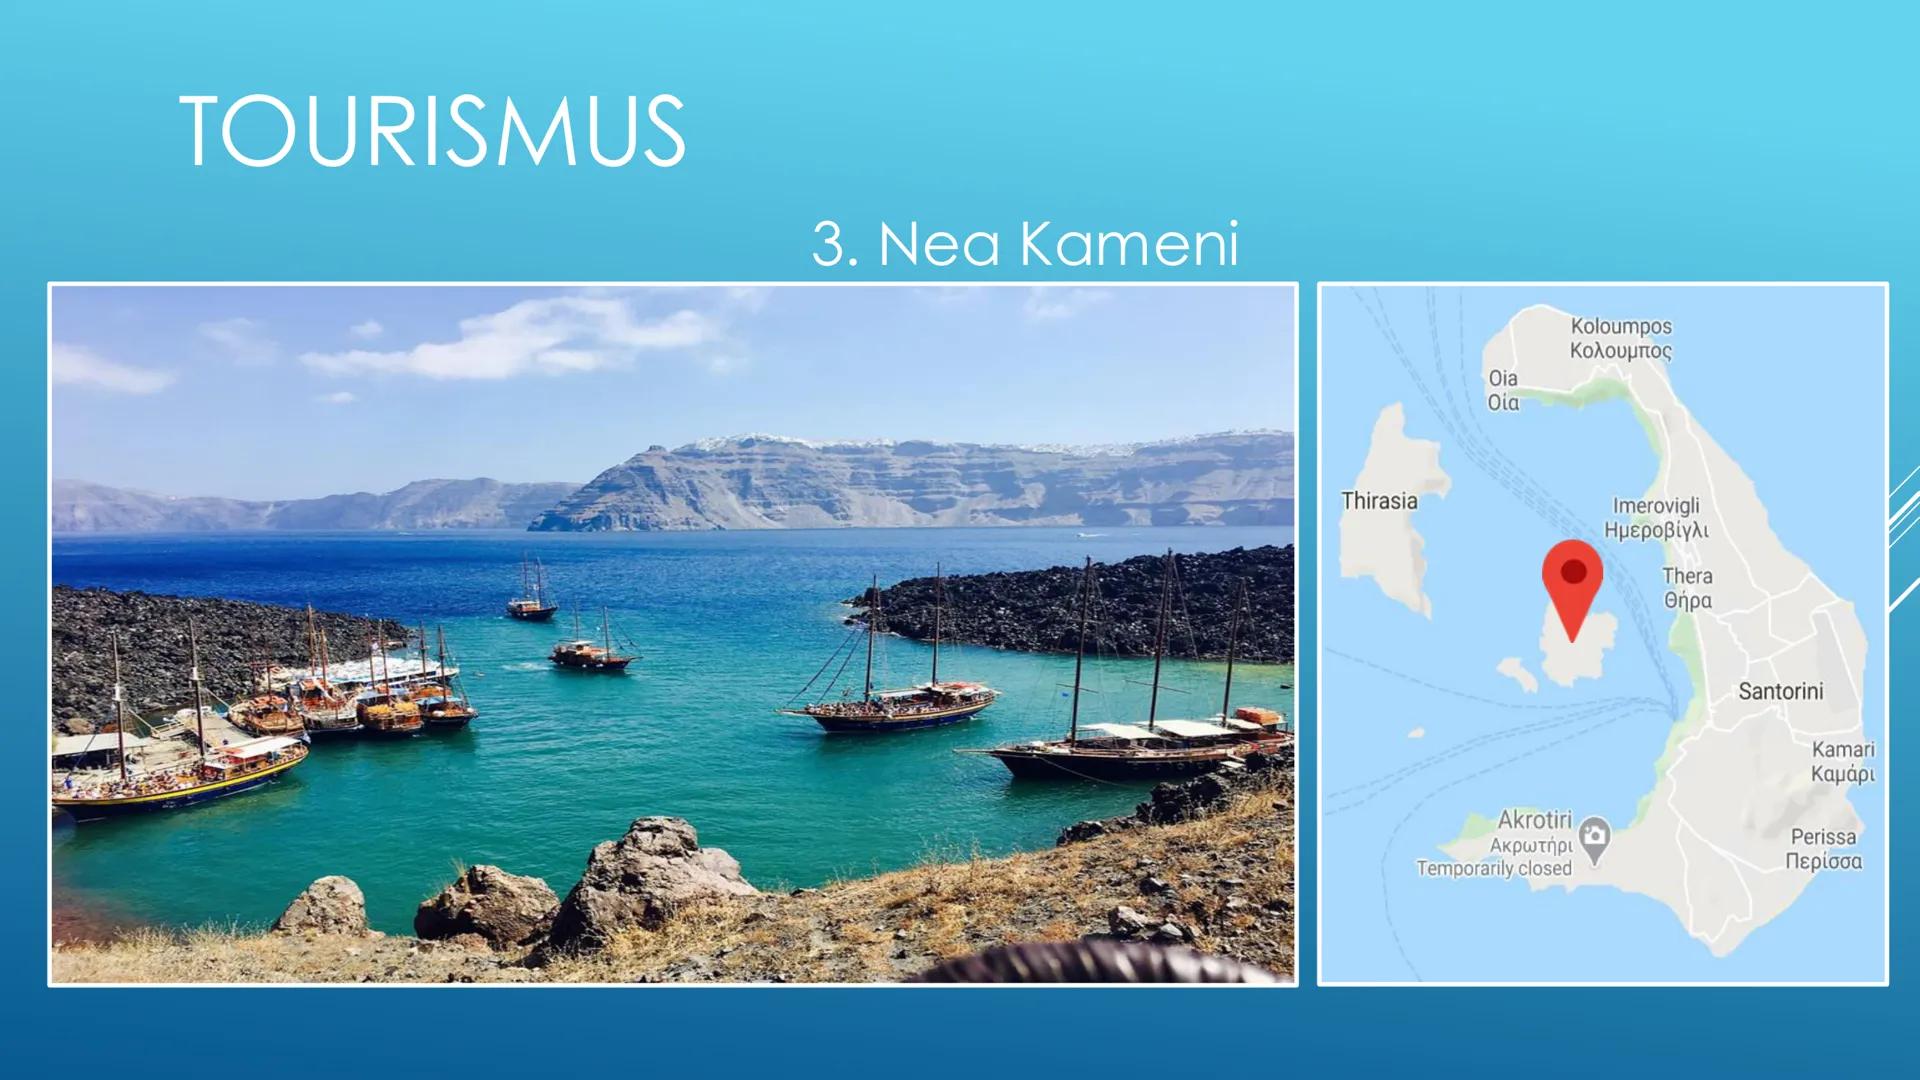 SANTORINI
eine wahnsinnig schöne griechische Insel INHALTSVERZEICHNIS
Informationen über Santorini
+ Geographische Eigenschaften
Das Vulkan 